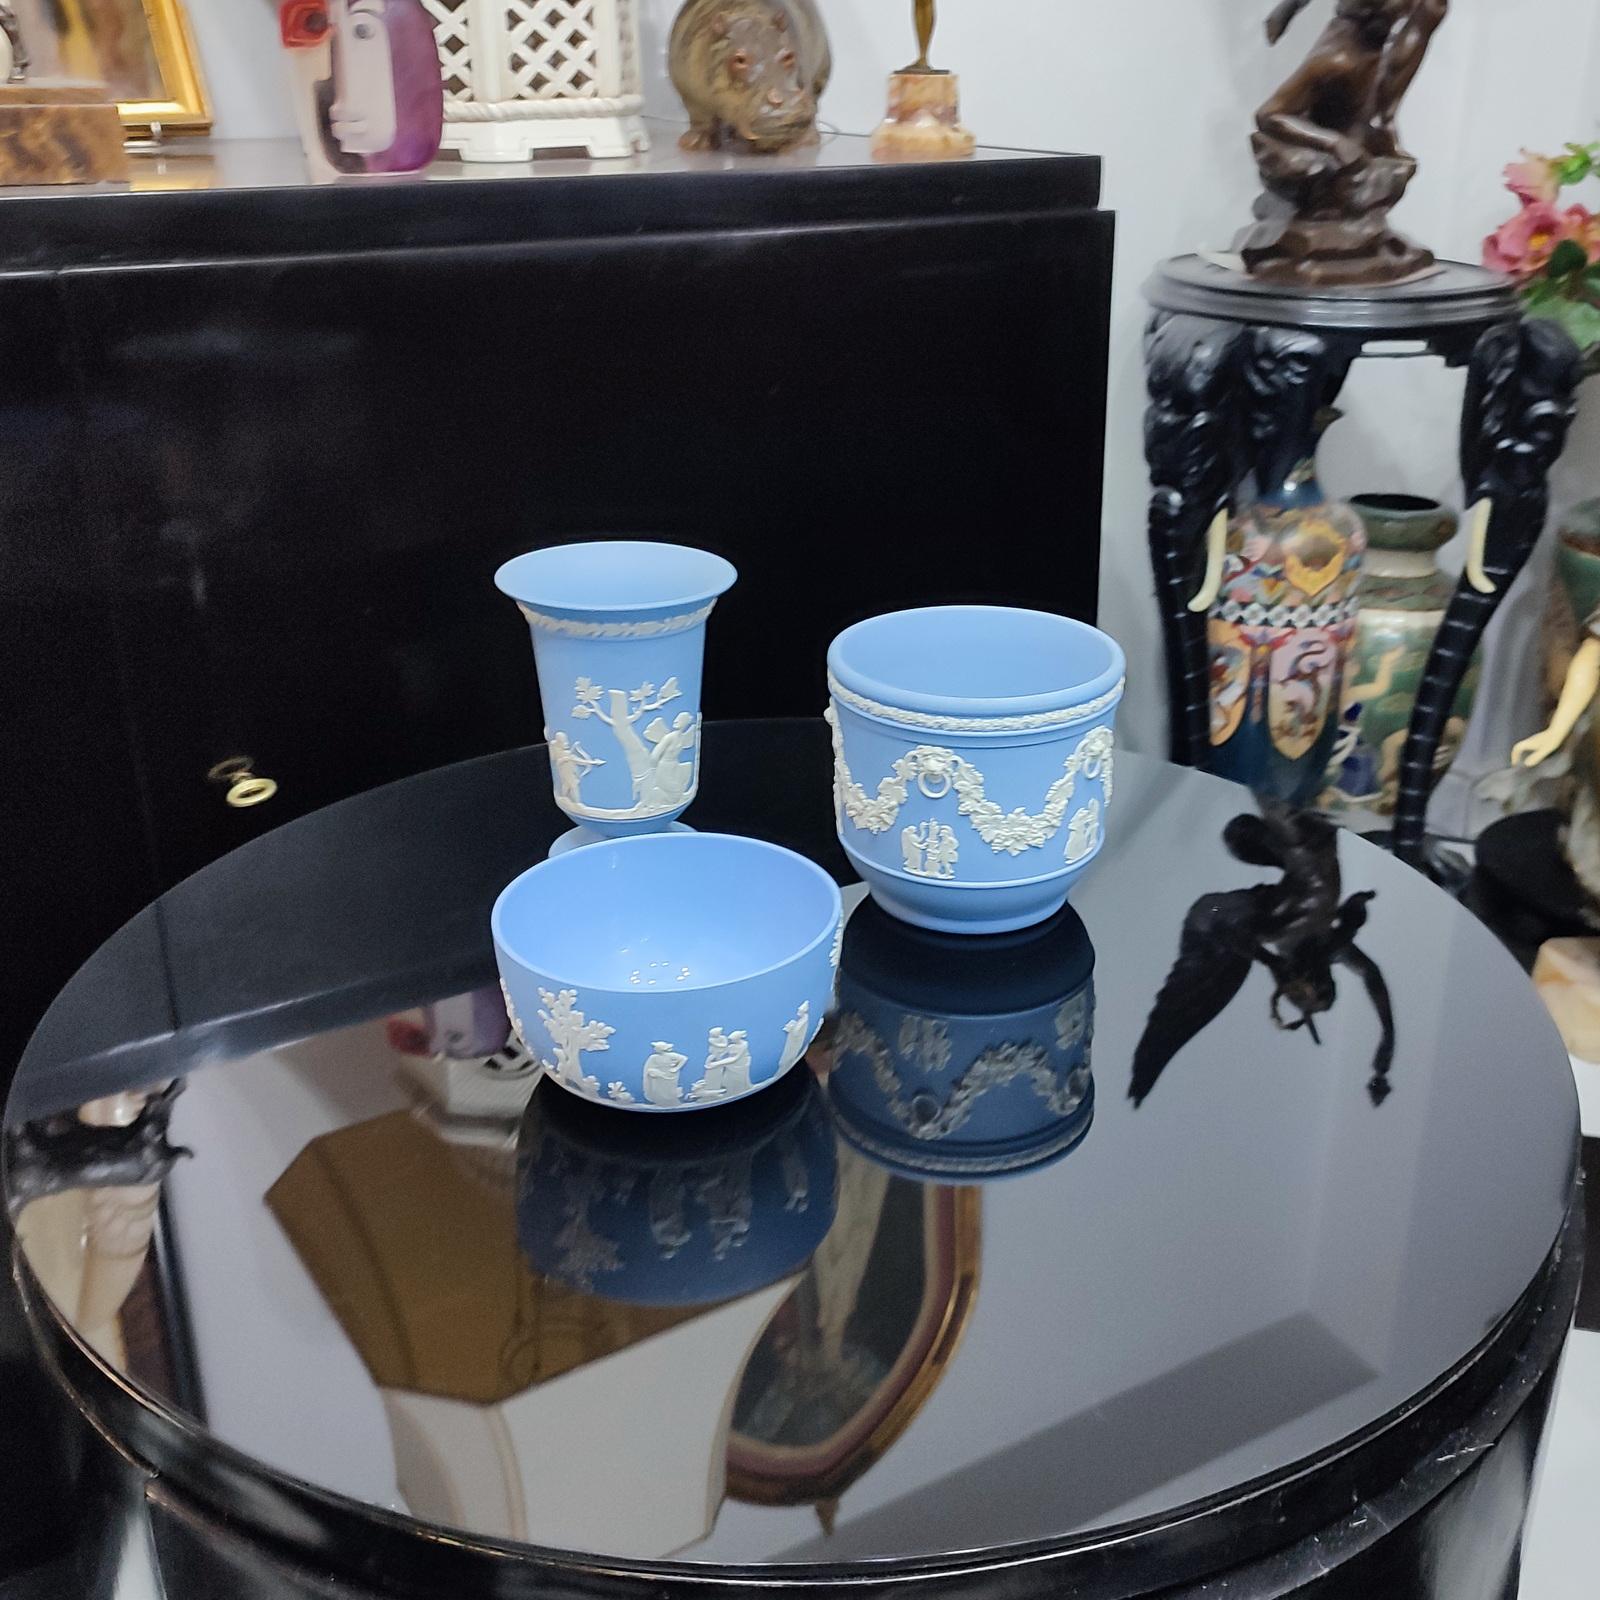 Une belle collection de quatre pièces de Jasperware Pale Blue de Wedgwood, comprenant un vase, un bol et un cache-pot. Fabriqué par Wedgwood en Angleterre dans les années 1980, marqué/estampillé sur la base.
Dimensions :
Vase H 14 cm, ⌀ 10cm
Bol H